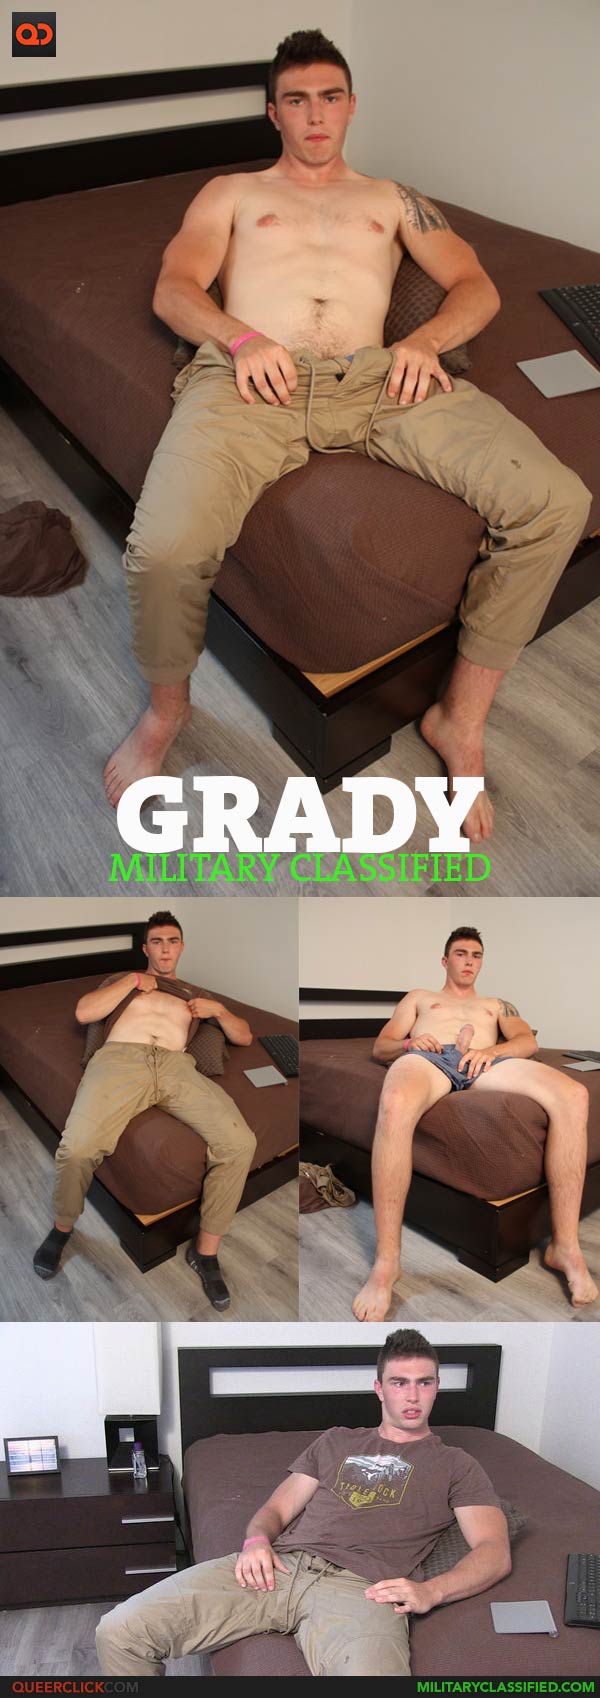 Military Classified: Grady